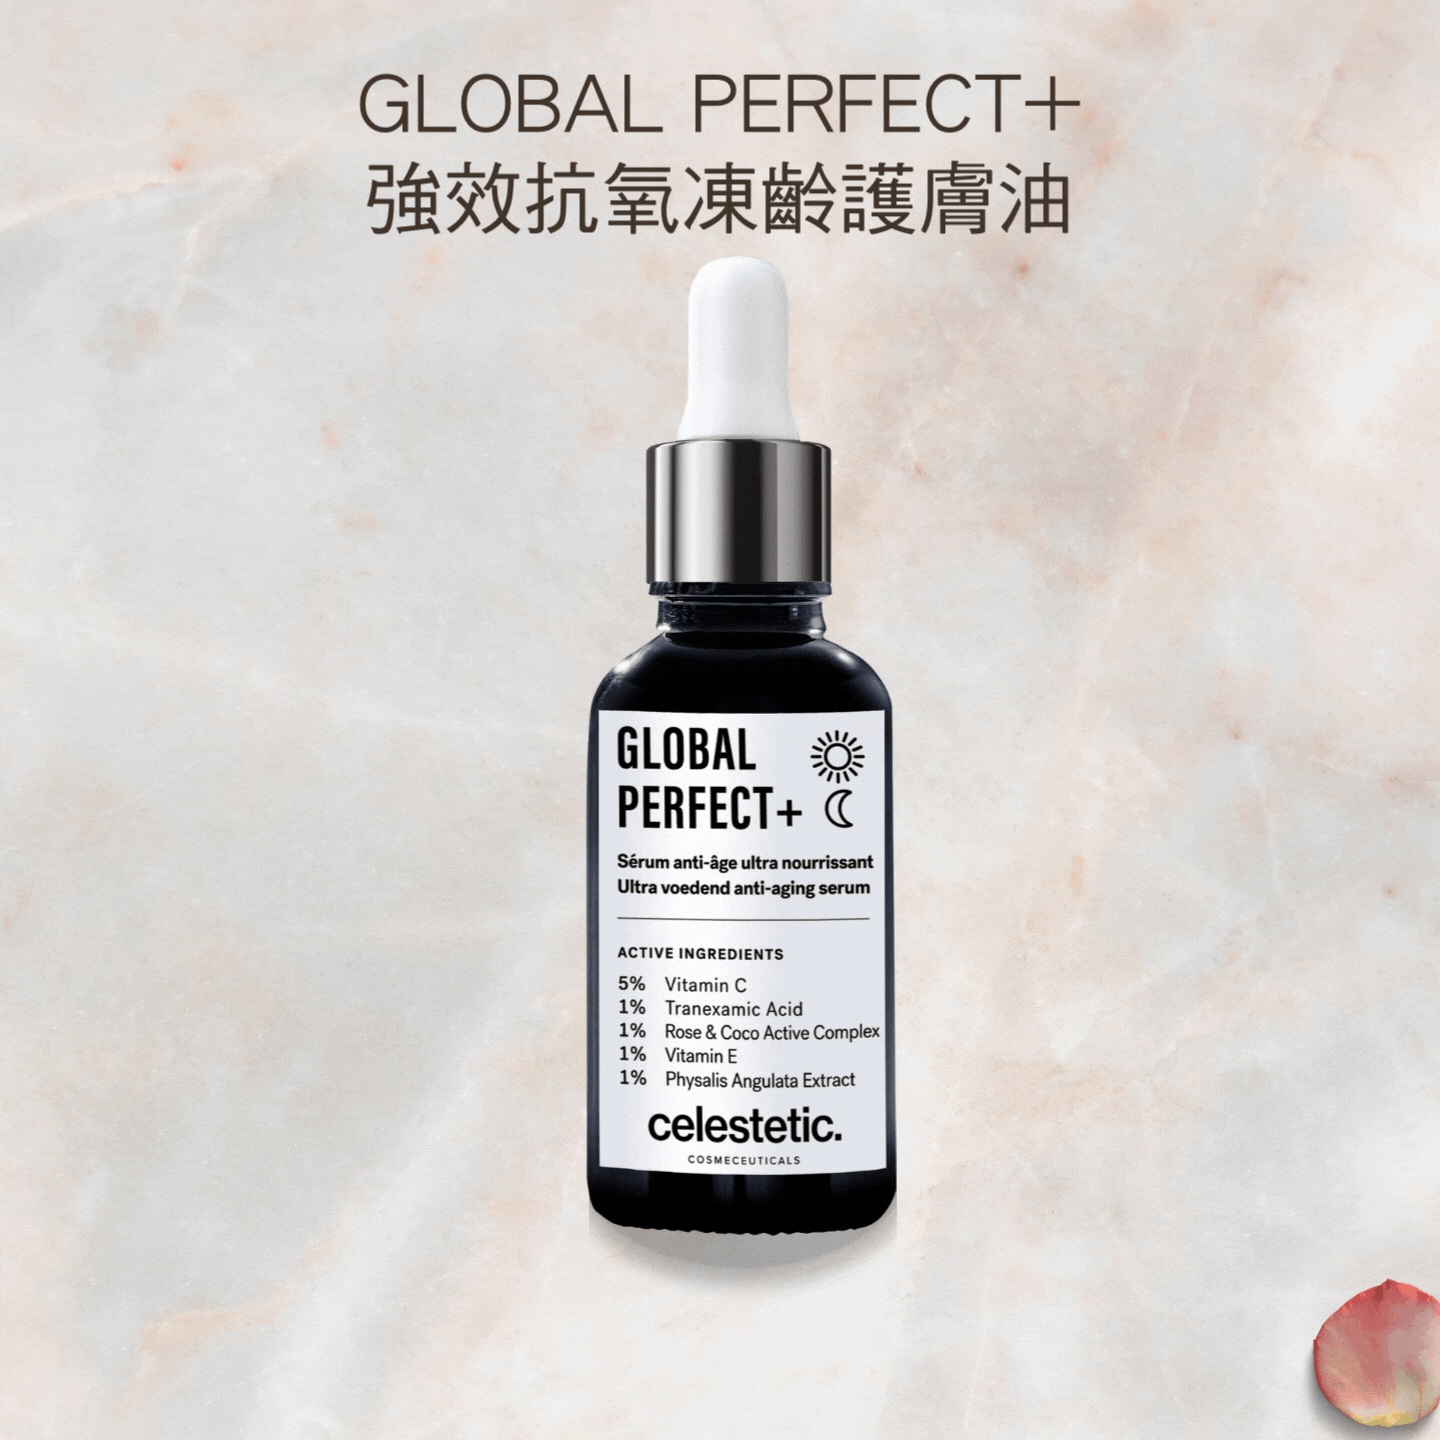 GLOBAL PERFECT+強效抗氧凍齡護膚油 NEW